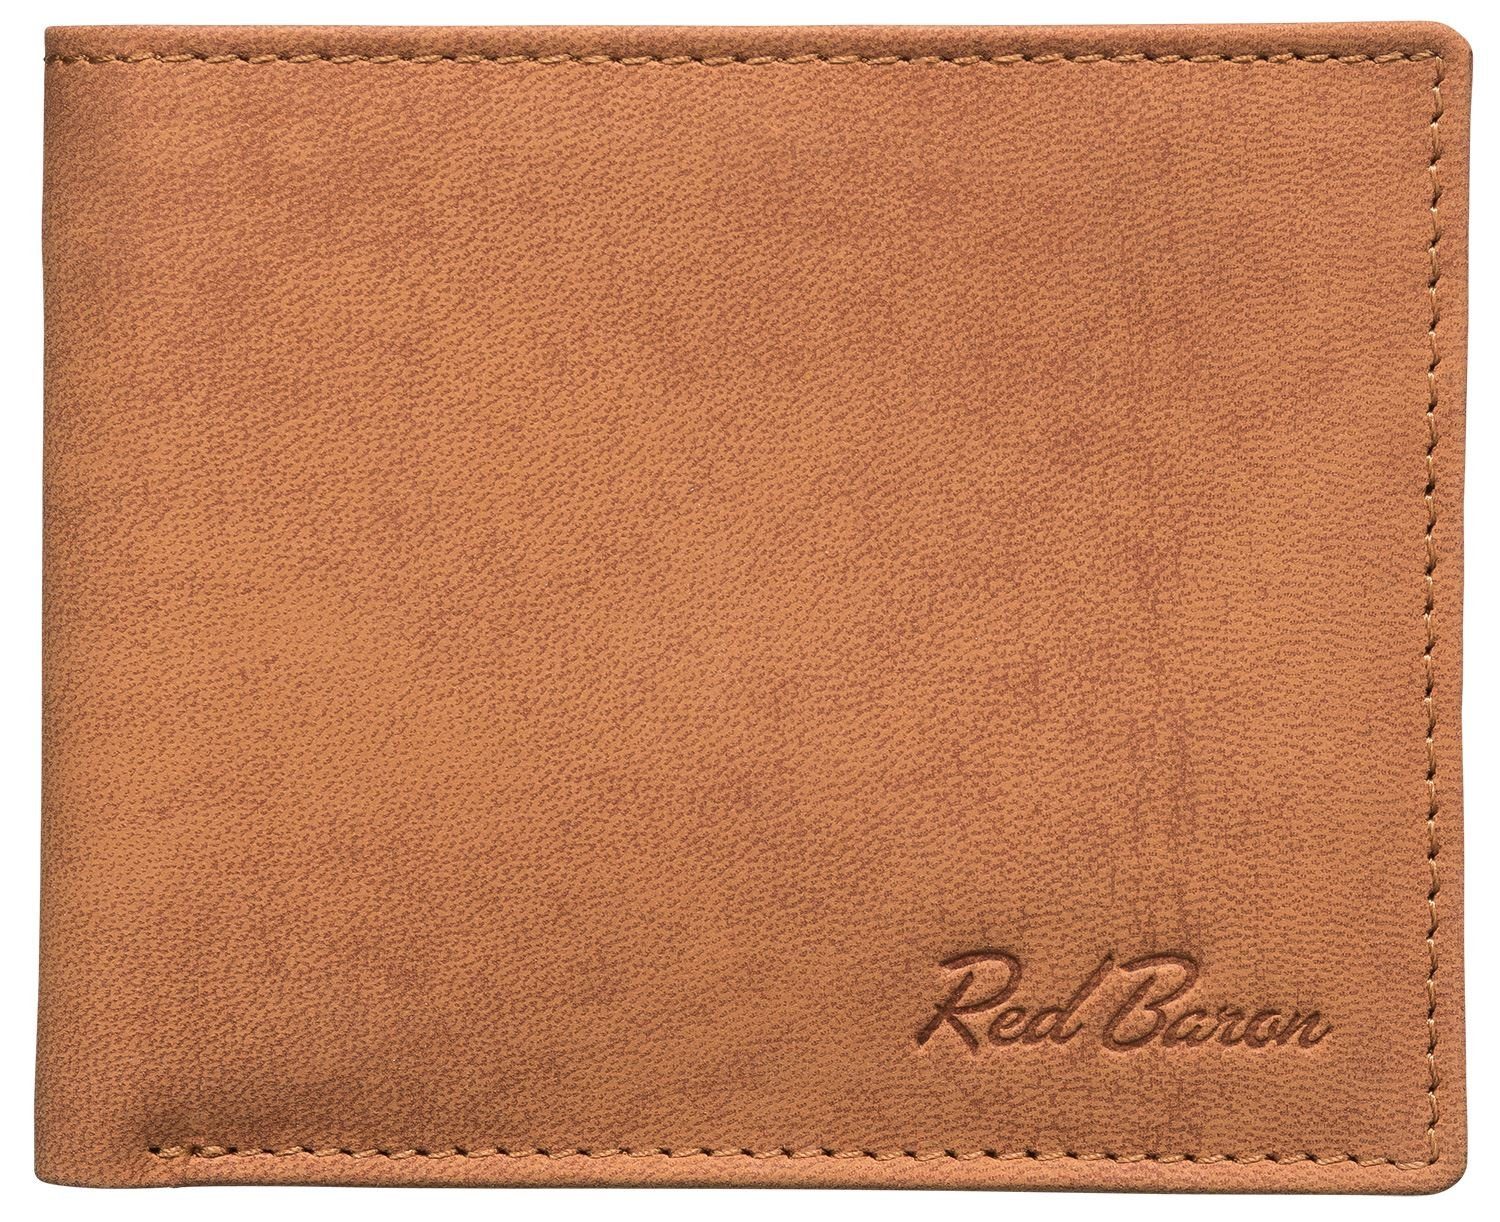 Red Baron Geldbörse RB-WT-004-02, Kreditkartenfächer, Münzfach mit Druckknopf